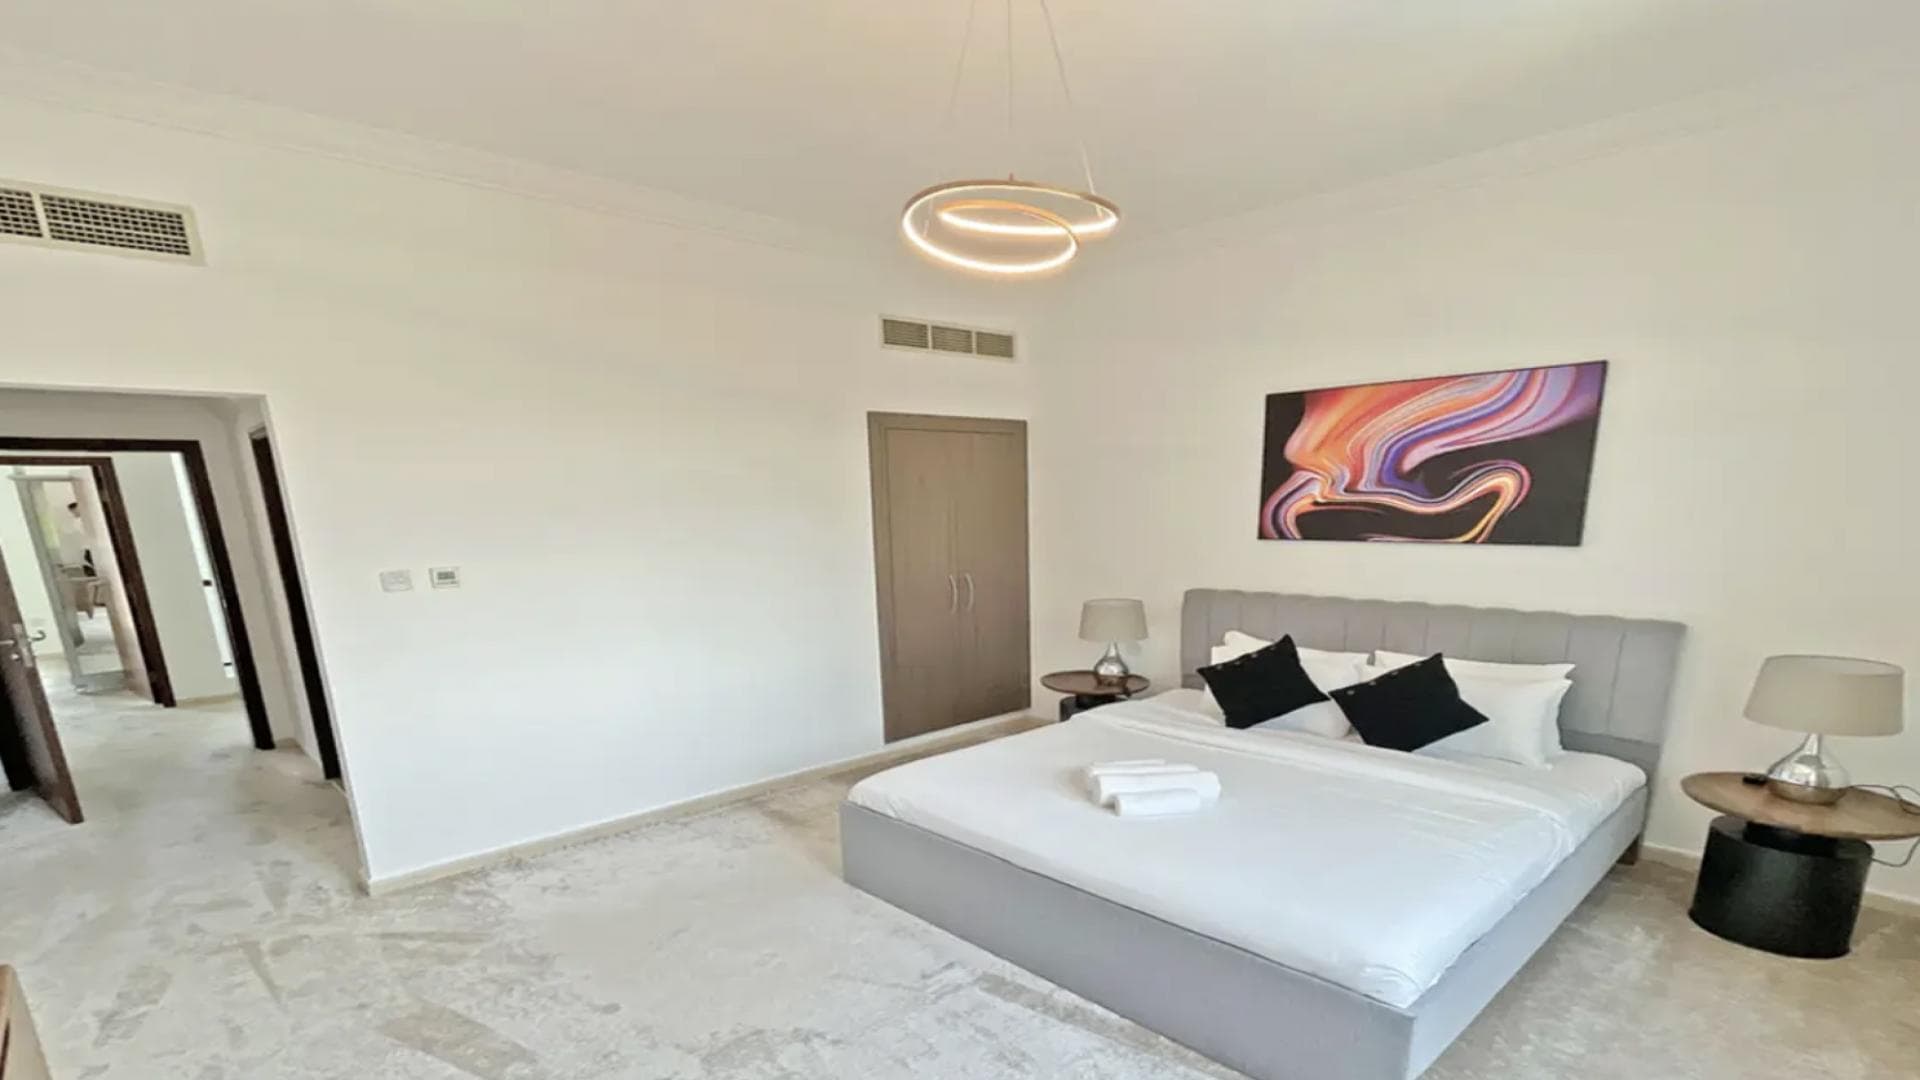 4 Bedroom Villa For Rent Al Thamam 13 Lp37961 7a2c73e9bfc3040.png